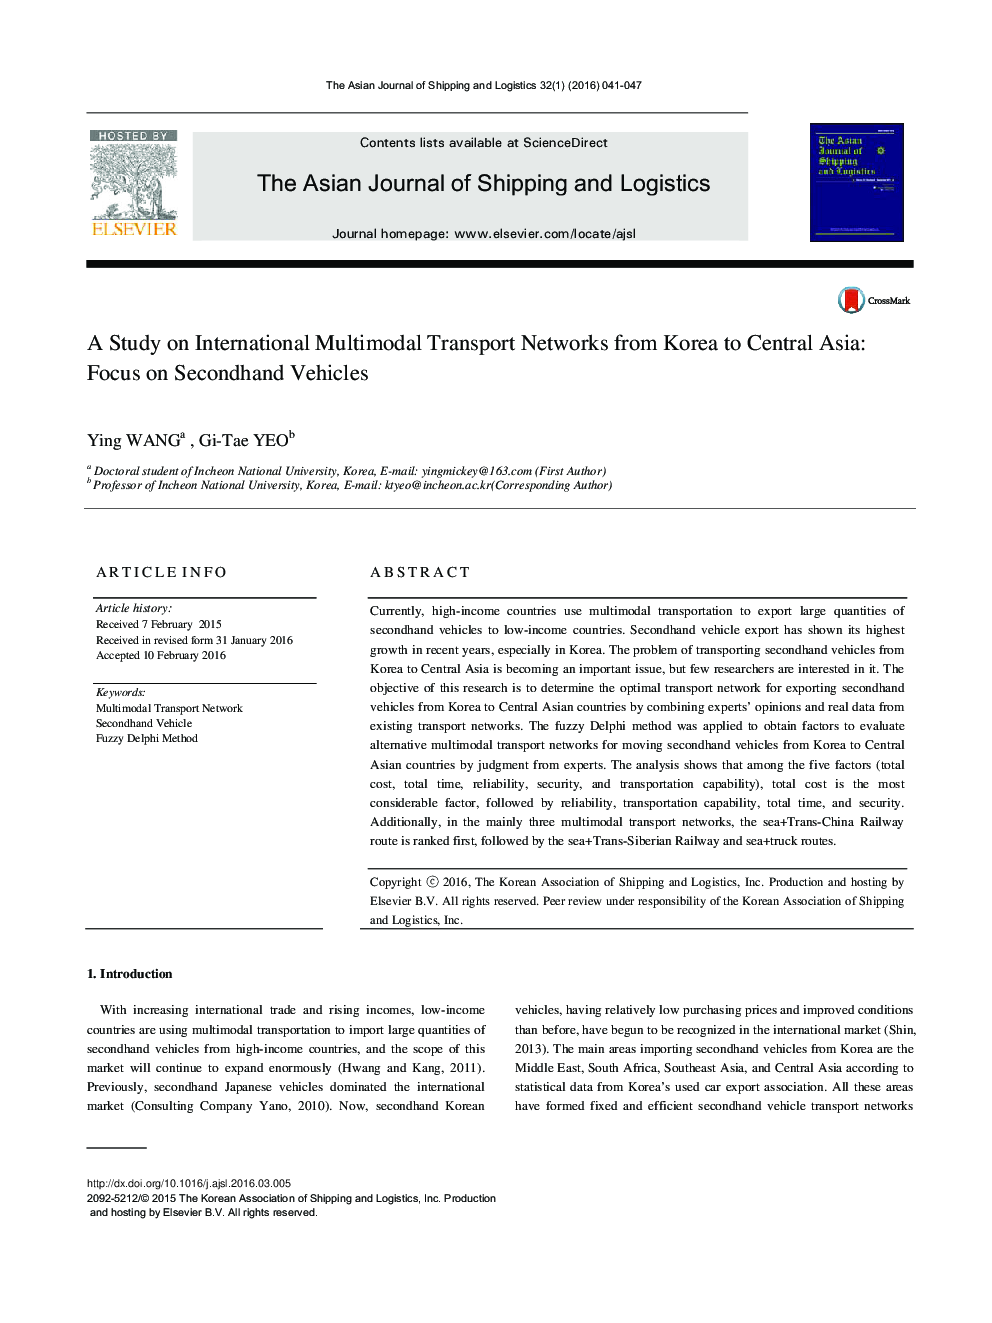 بررسی شبکه های بین المللی حمل و نقل چند وجهی از کره به آسیای مرکزی: تمرکز بر وسایل نقلیه دست دوم